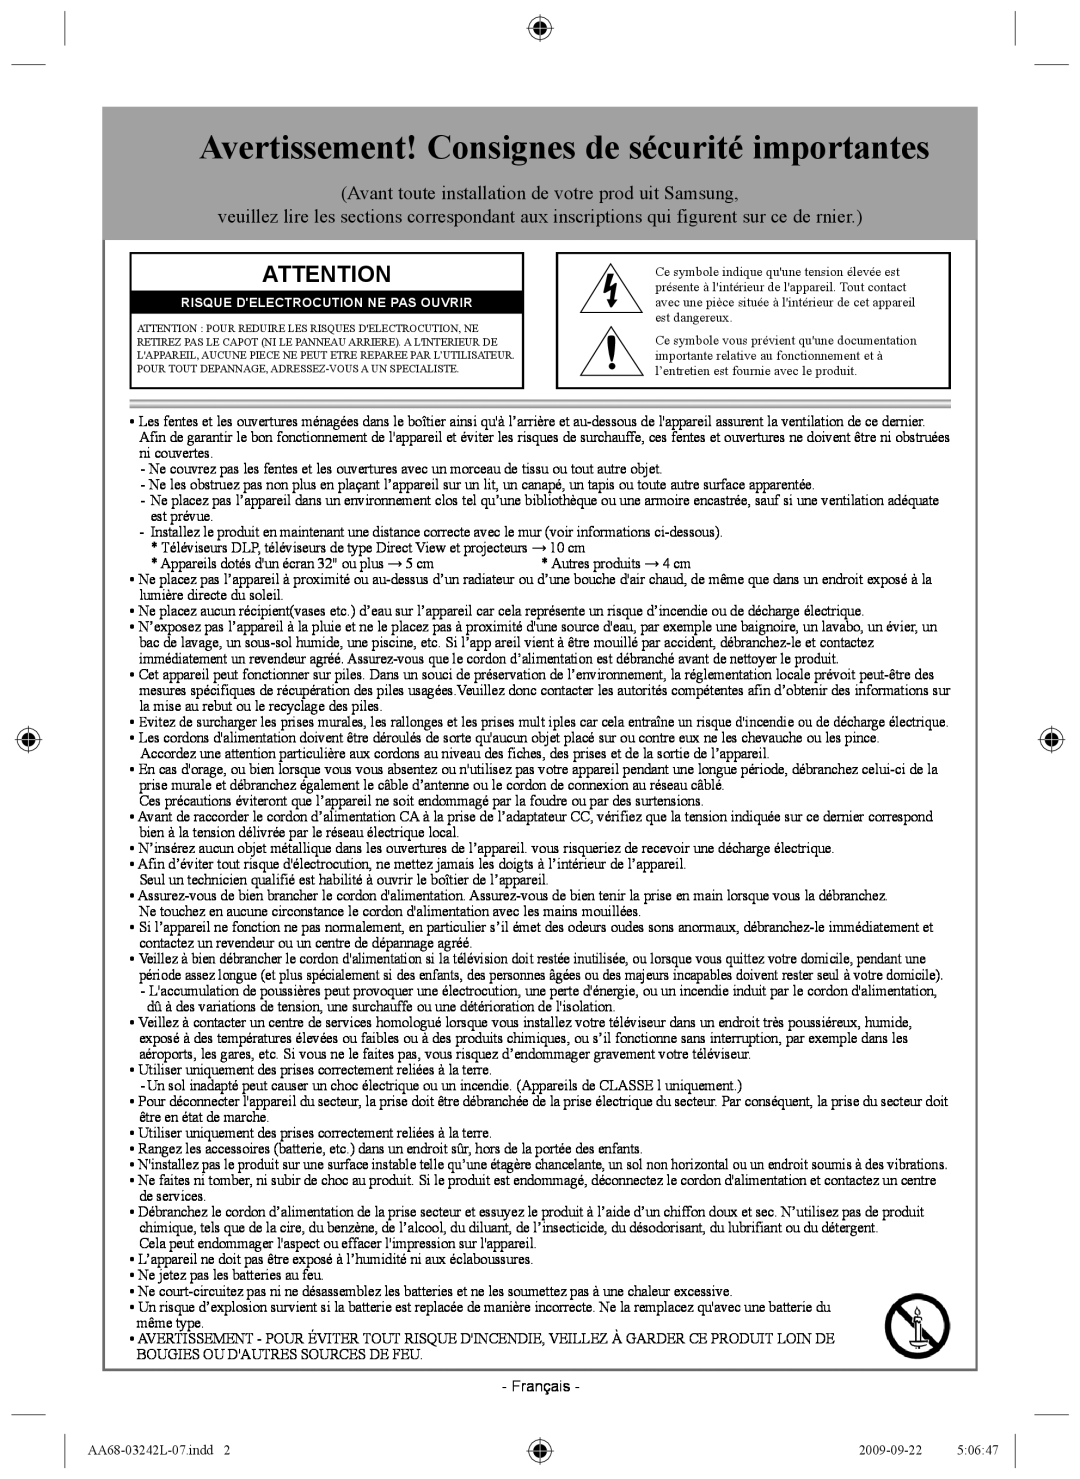 Samsung AA68-03242L-07 important safety instructions Avertissement! Consignes de sécurité importantes 